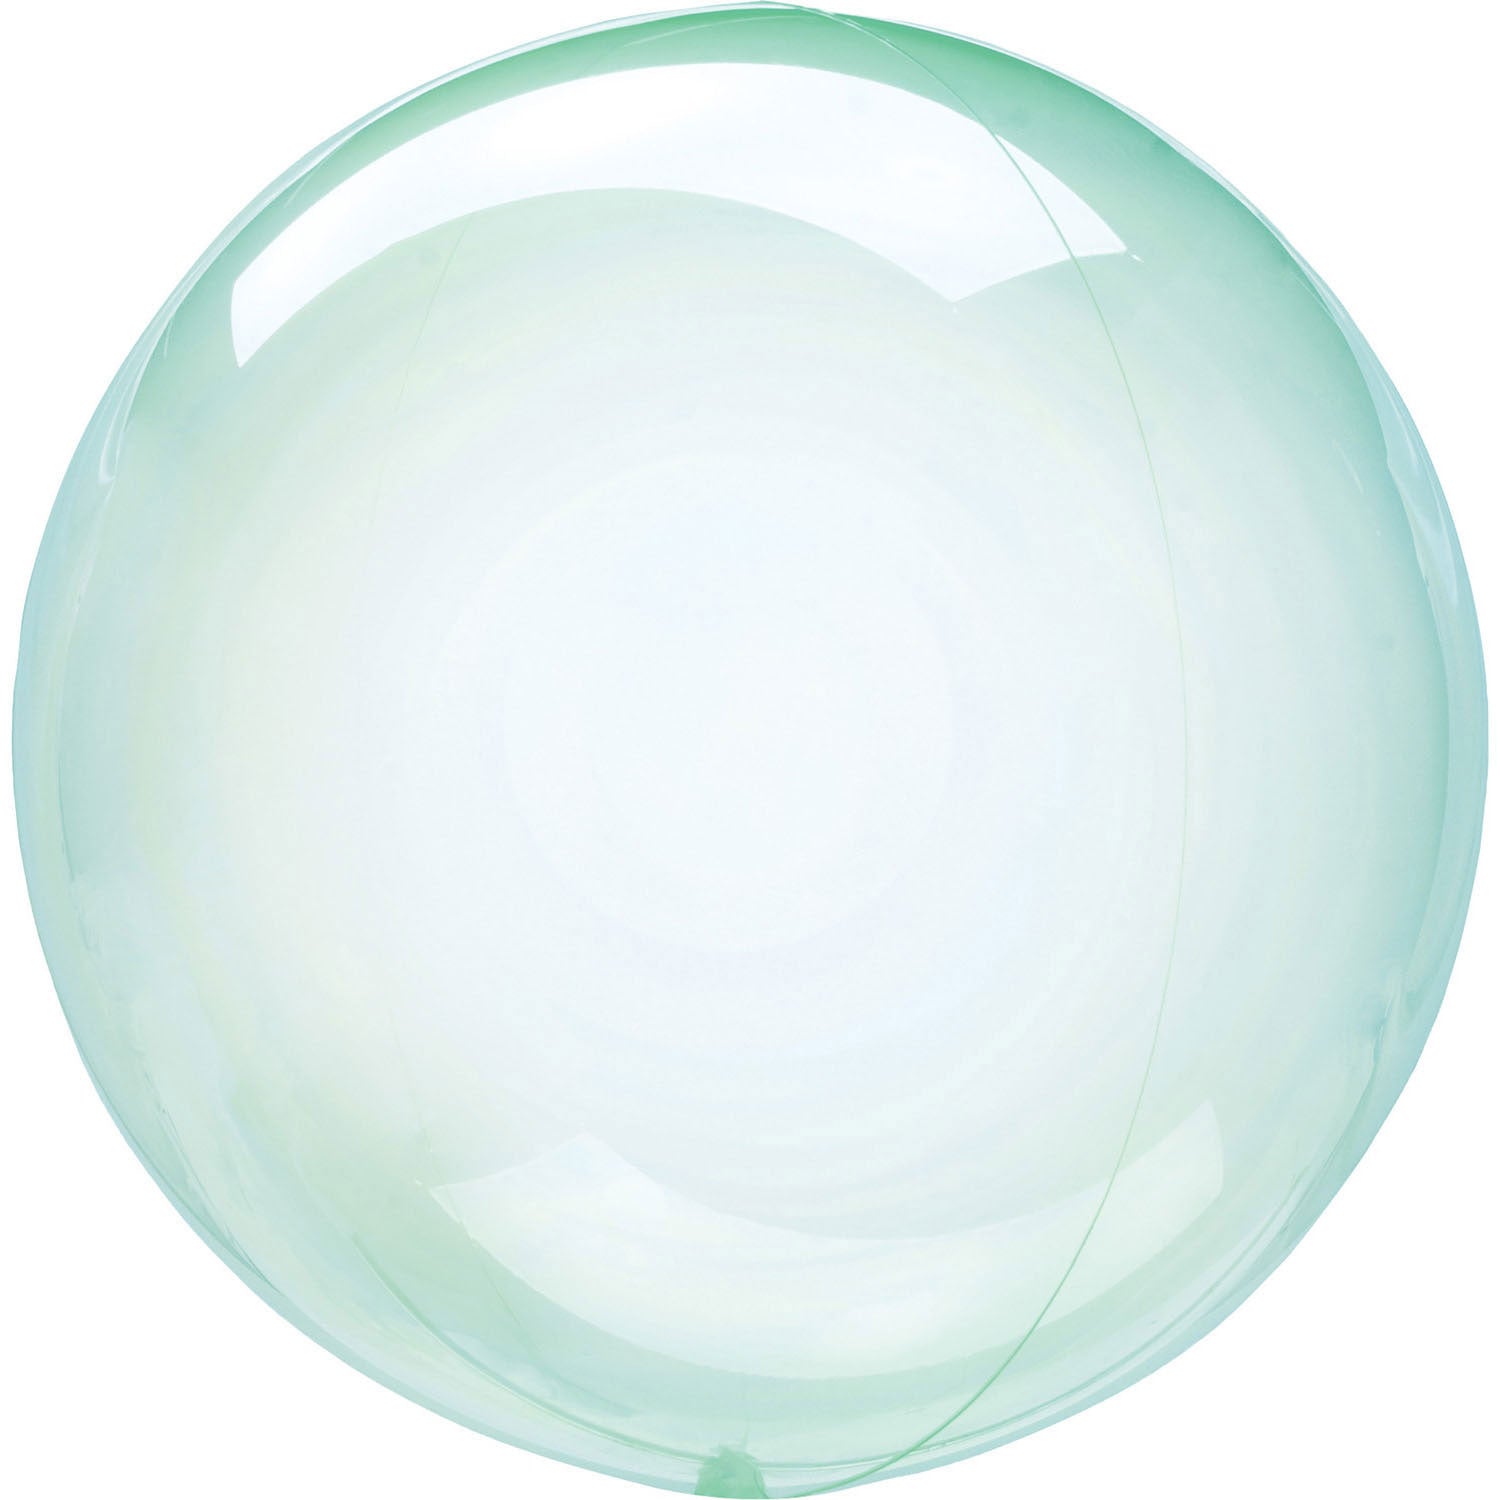 Colored spherical soap bubbles S40